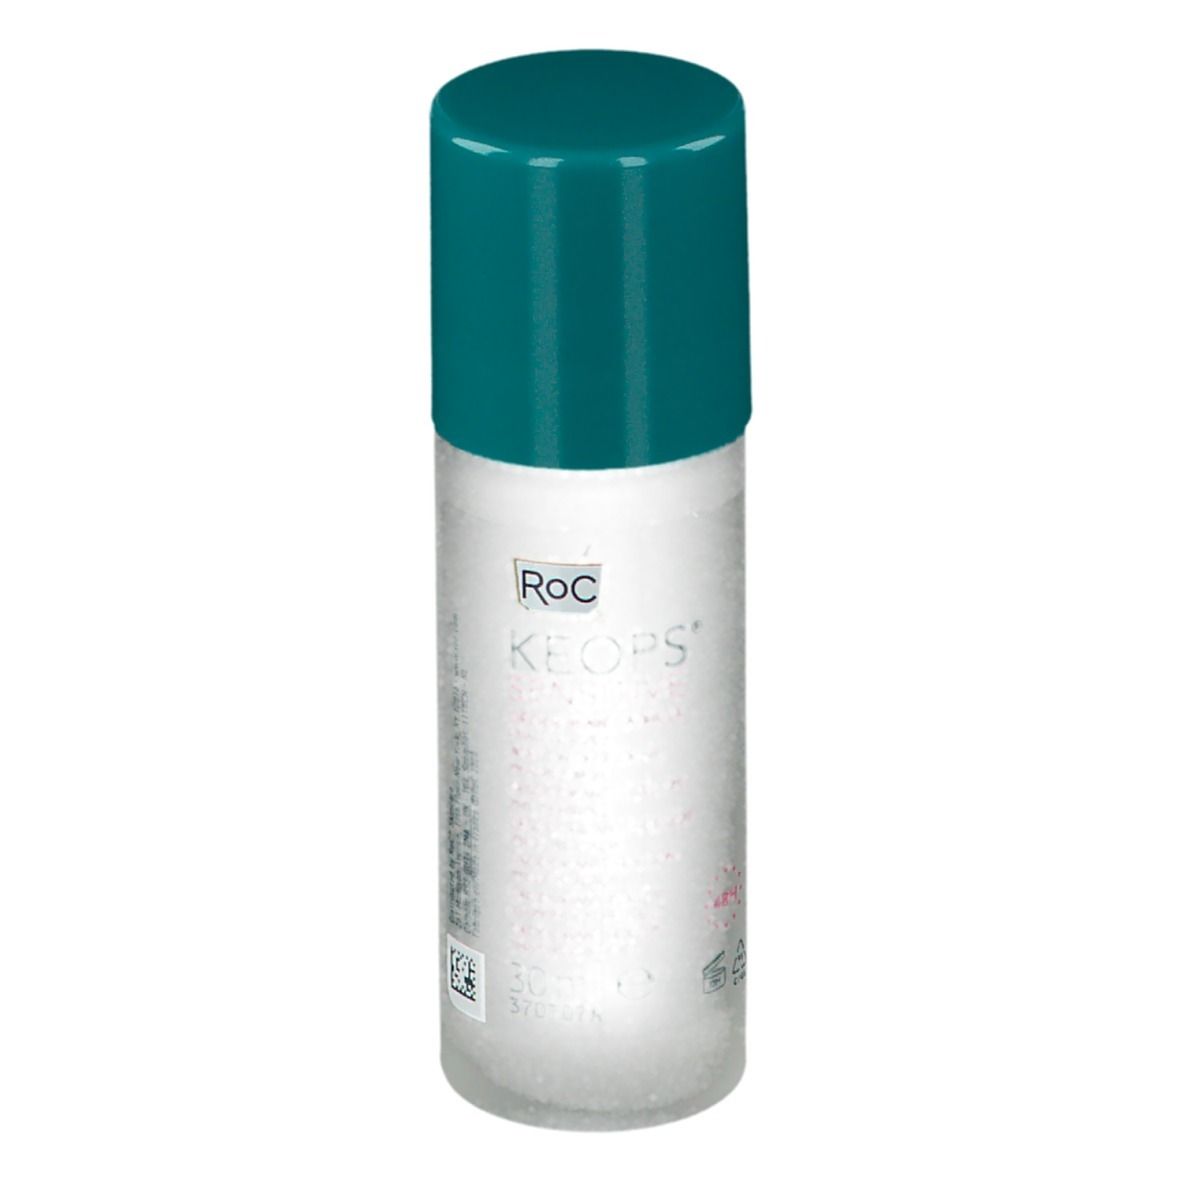 INCONNU RoC® Keops Deodorant Stick